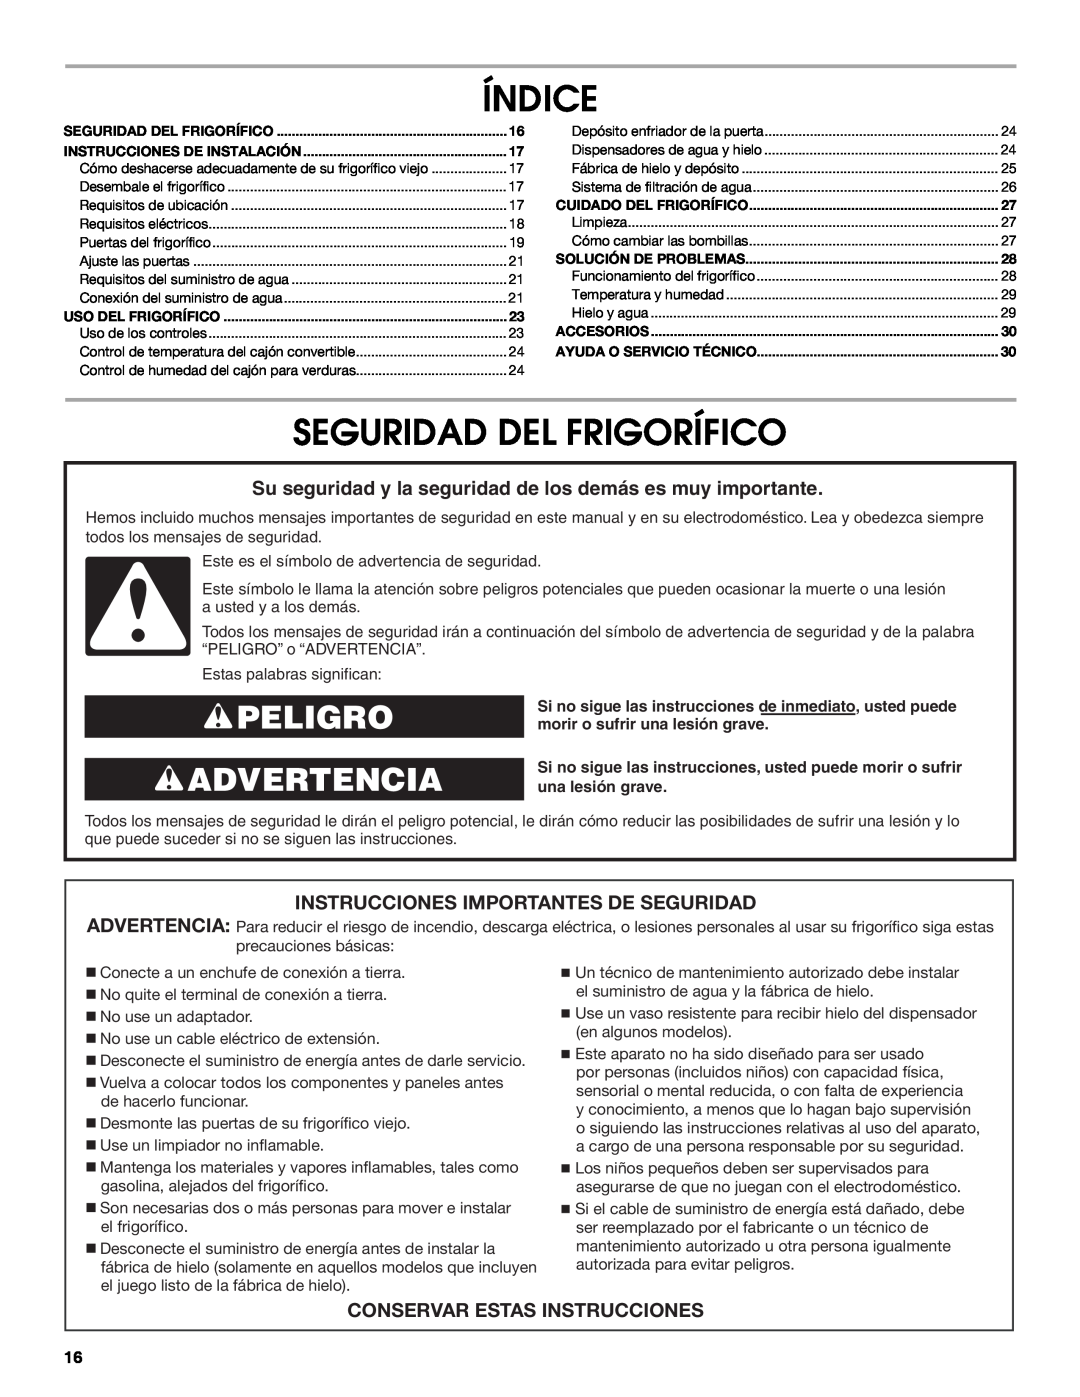 Whirlpool W10266784A manual Índice, Seguridad Del Frigorífico, Peligro Advertencia, Instrucciones Importantes De Seguridad 